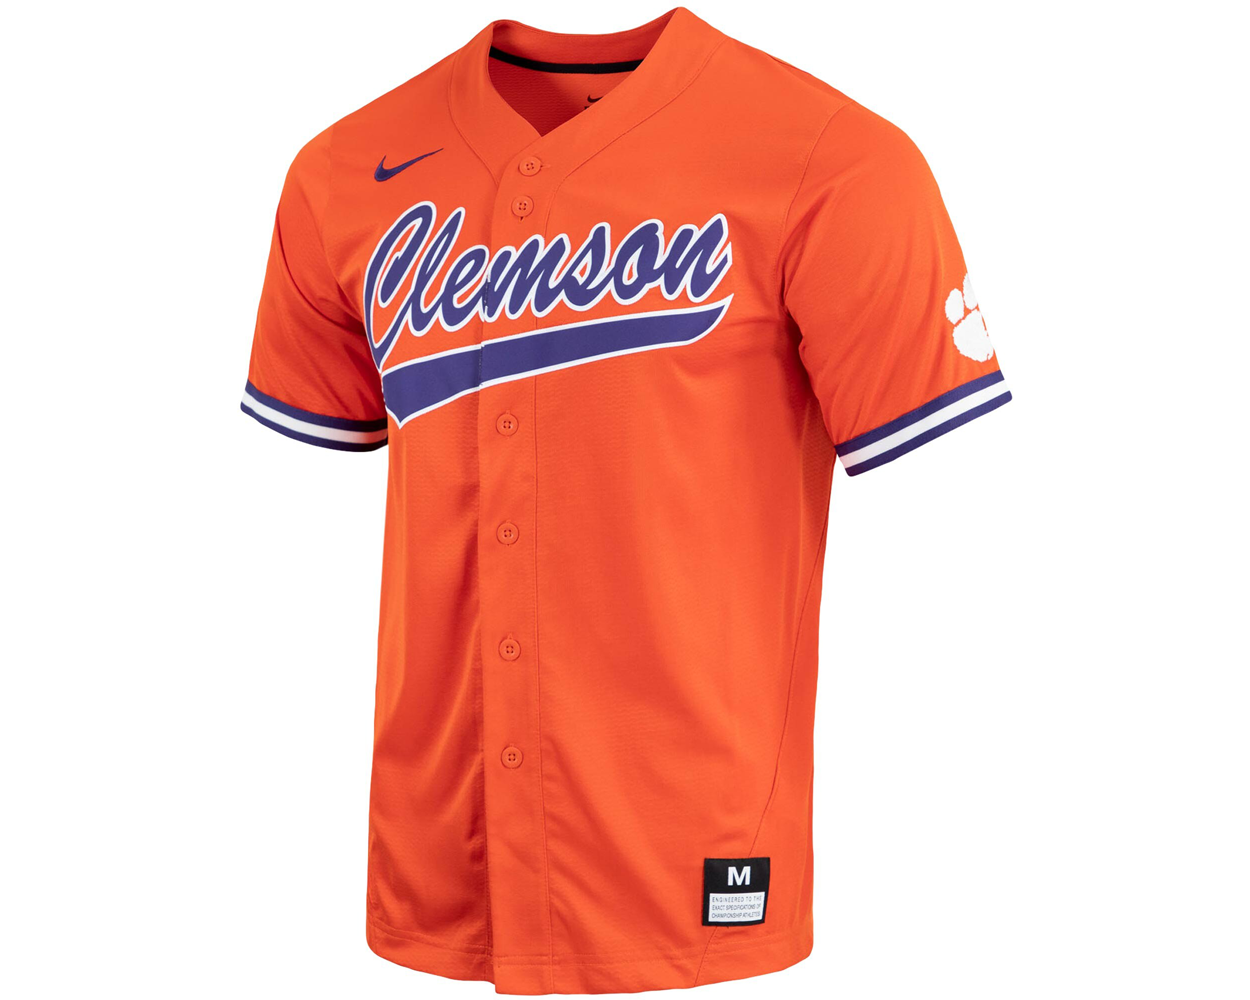 Clemson Tigers baseball NCAA gear